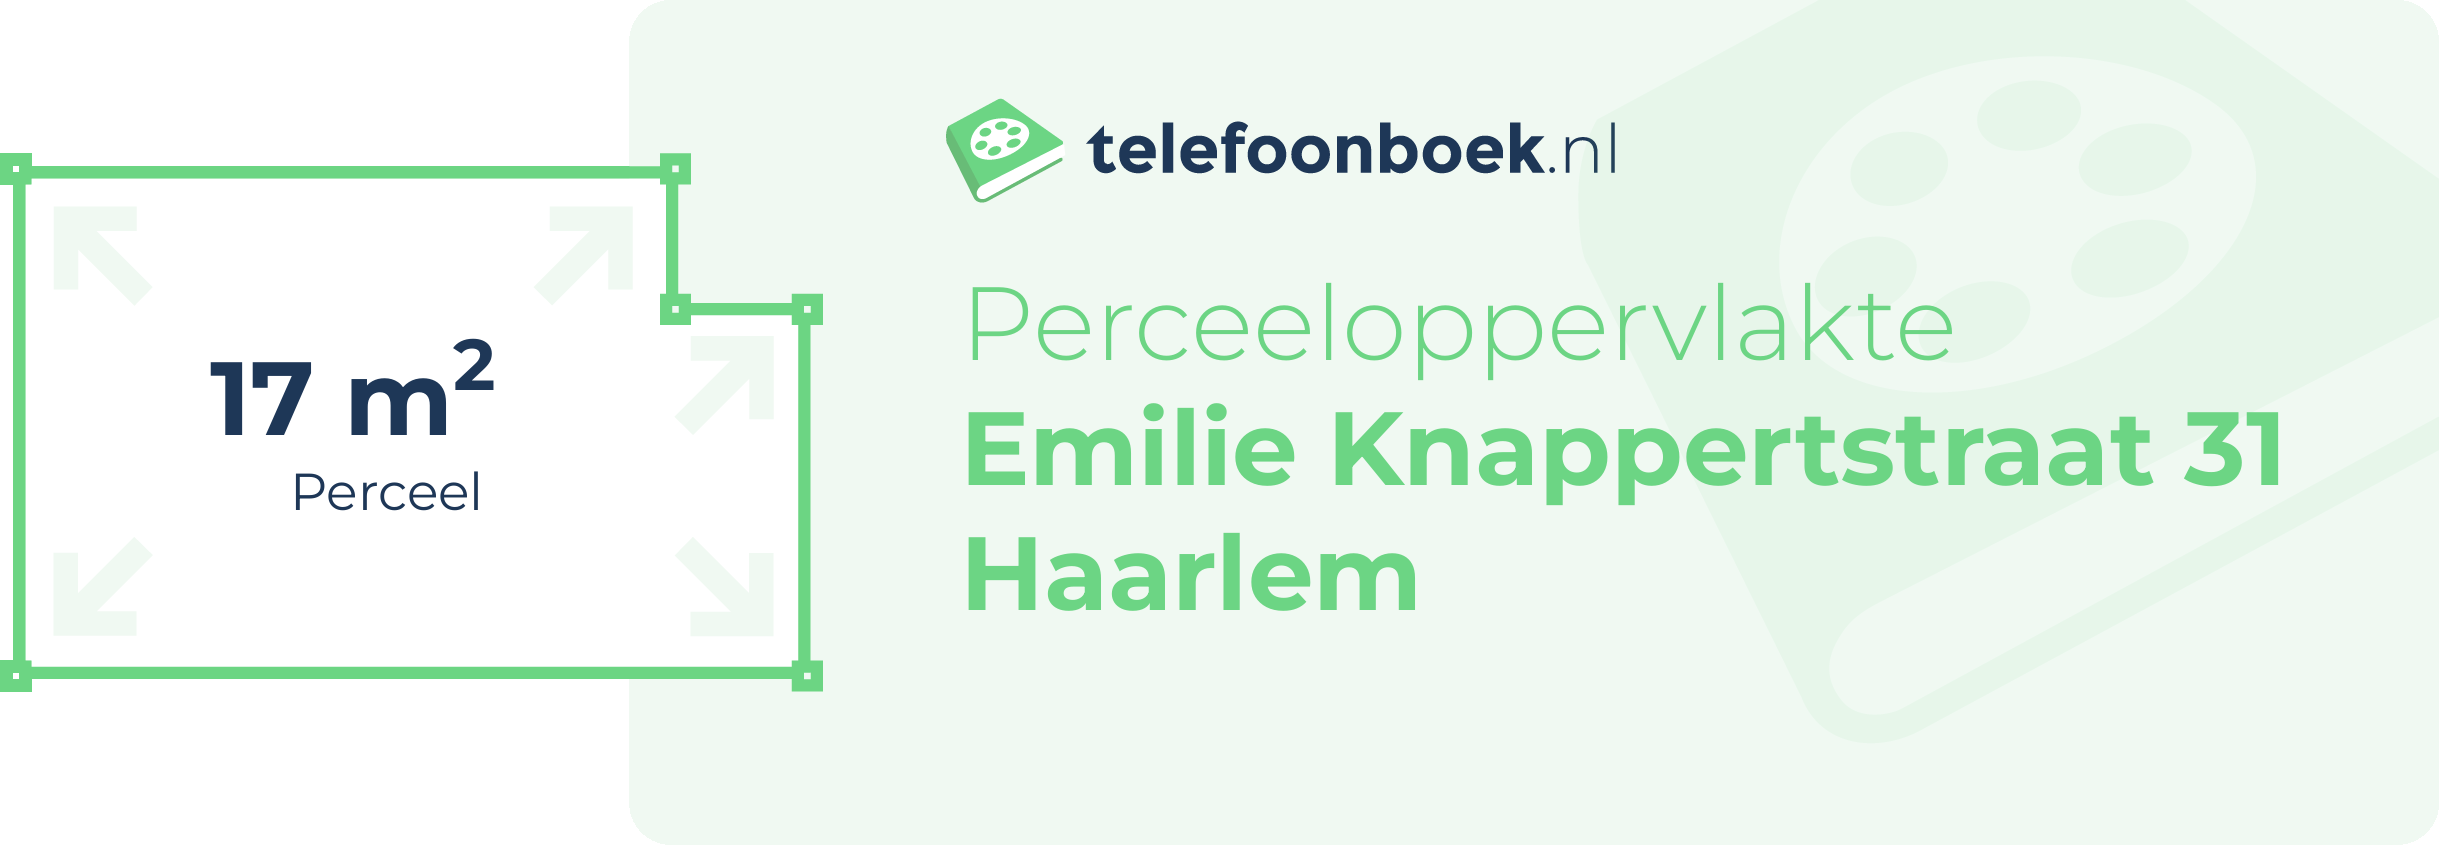 Perceeloppervlakte Emilie Knappertstraat 31 Haarlem